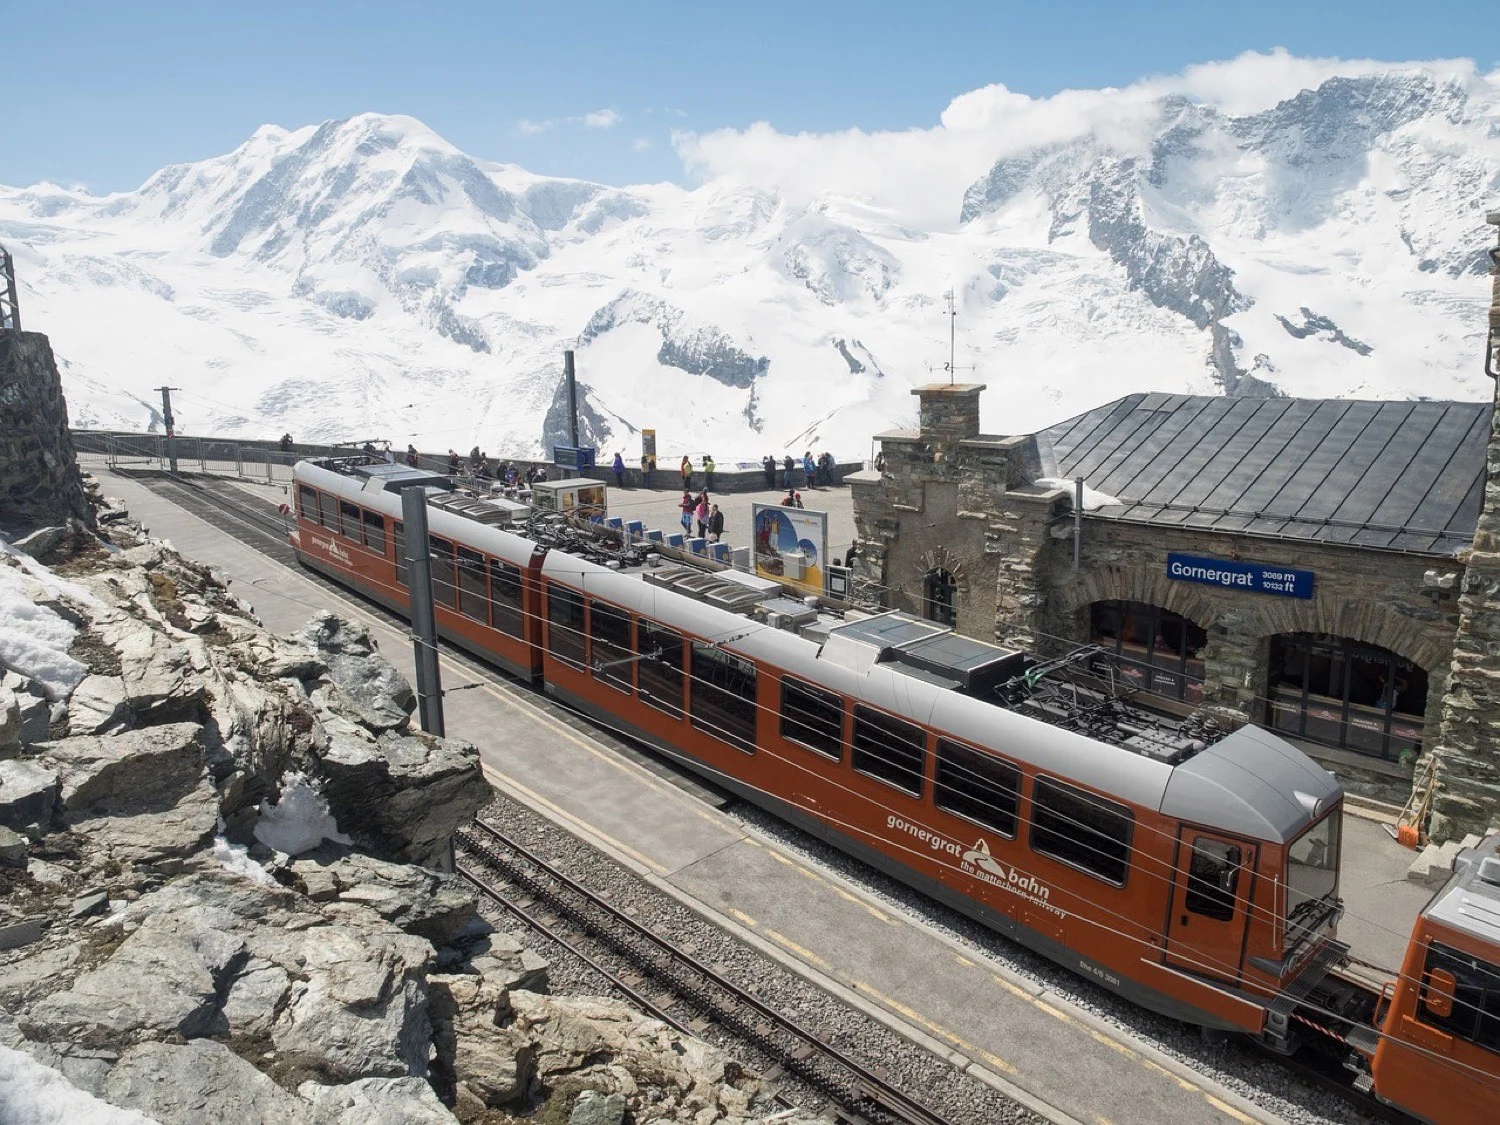 travel tips for zermatt